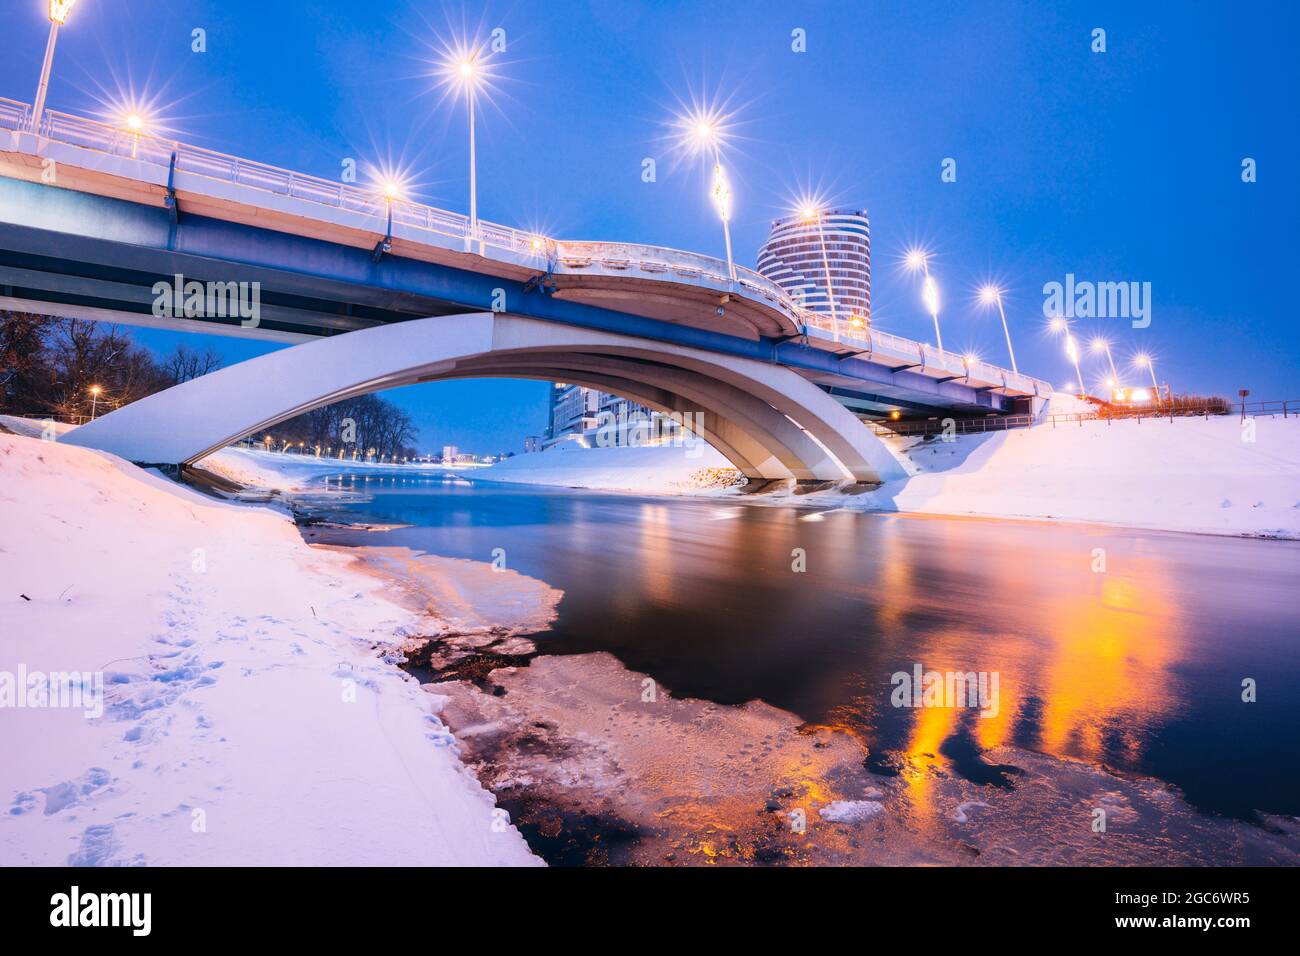 Pologne, Subcarpathia, Rzeszow, pont illuminé en hiver Banque D'Images